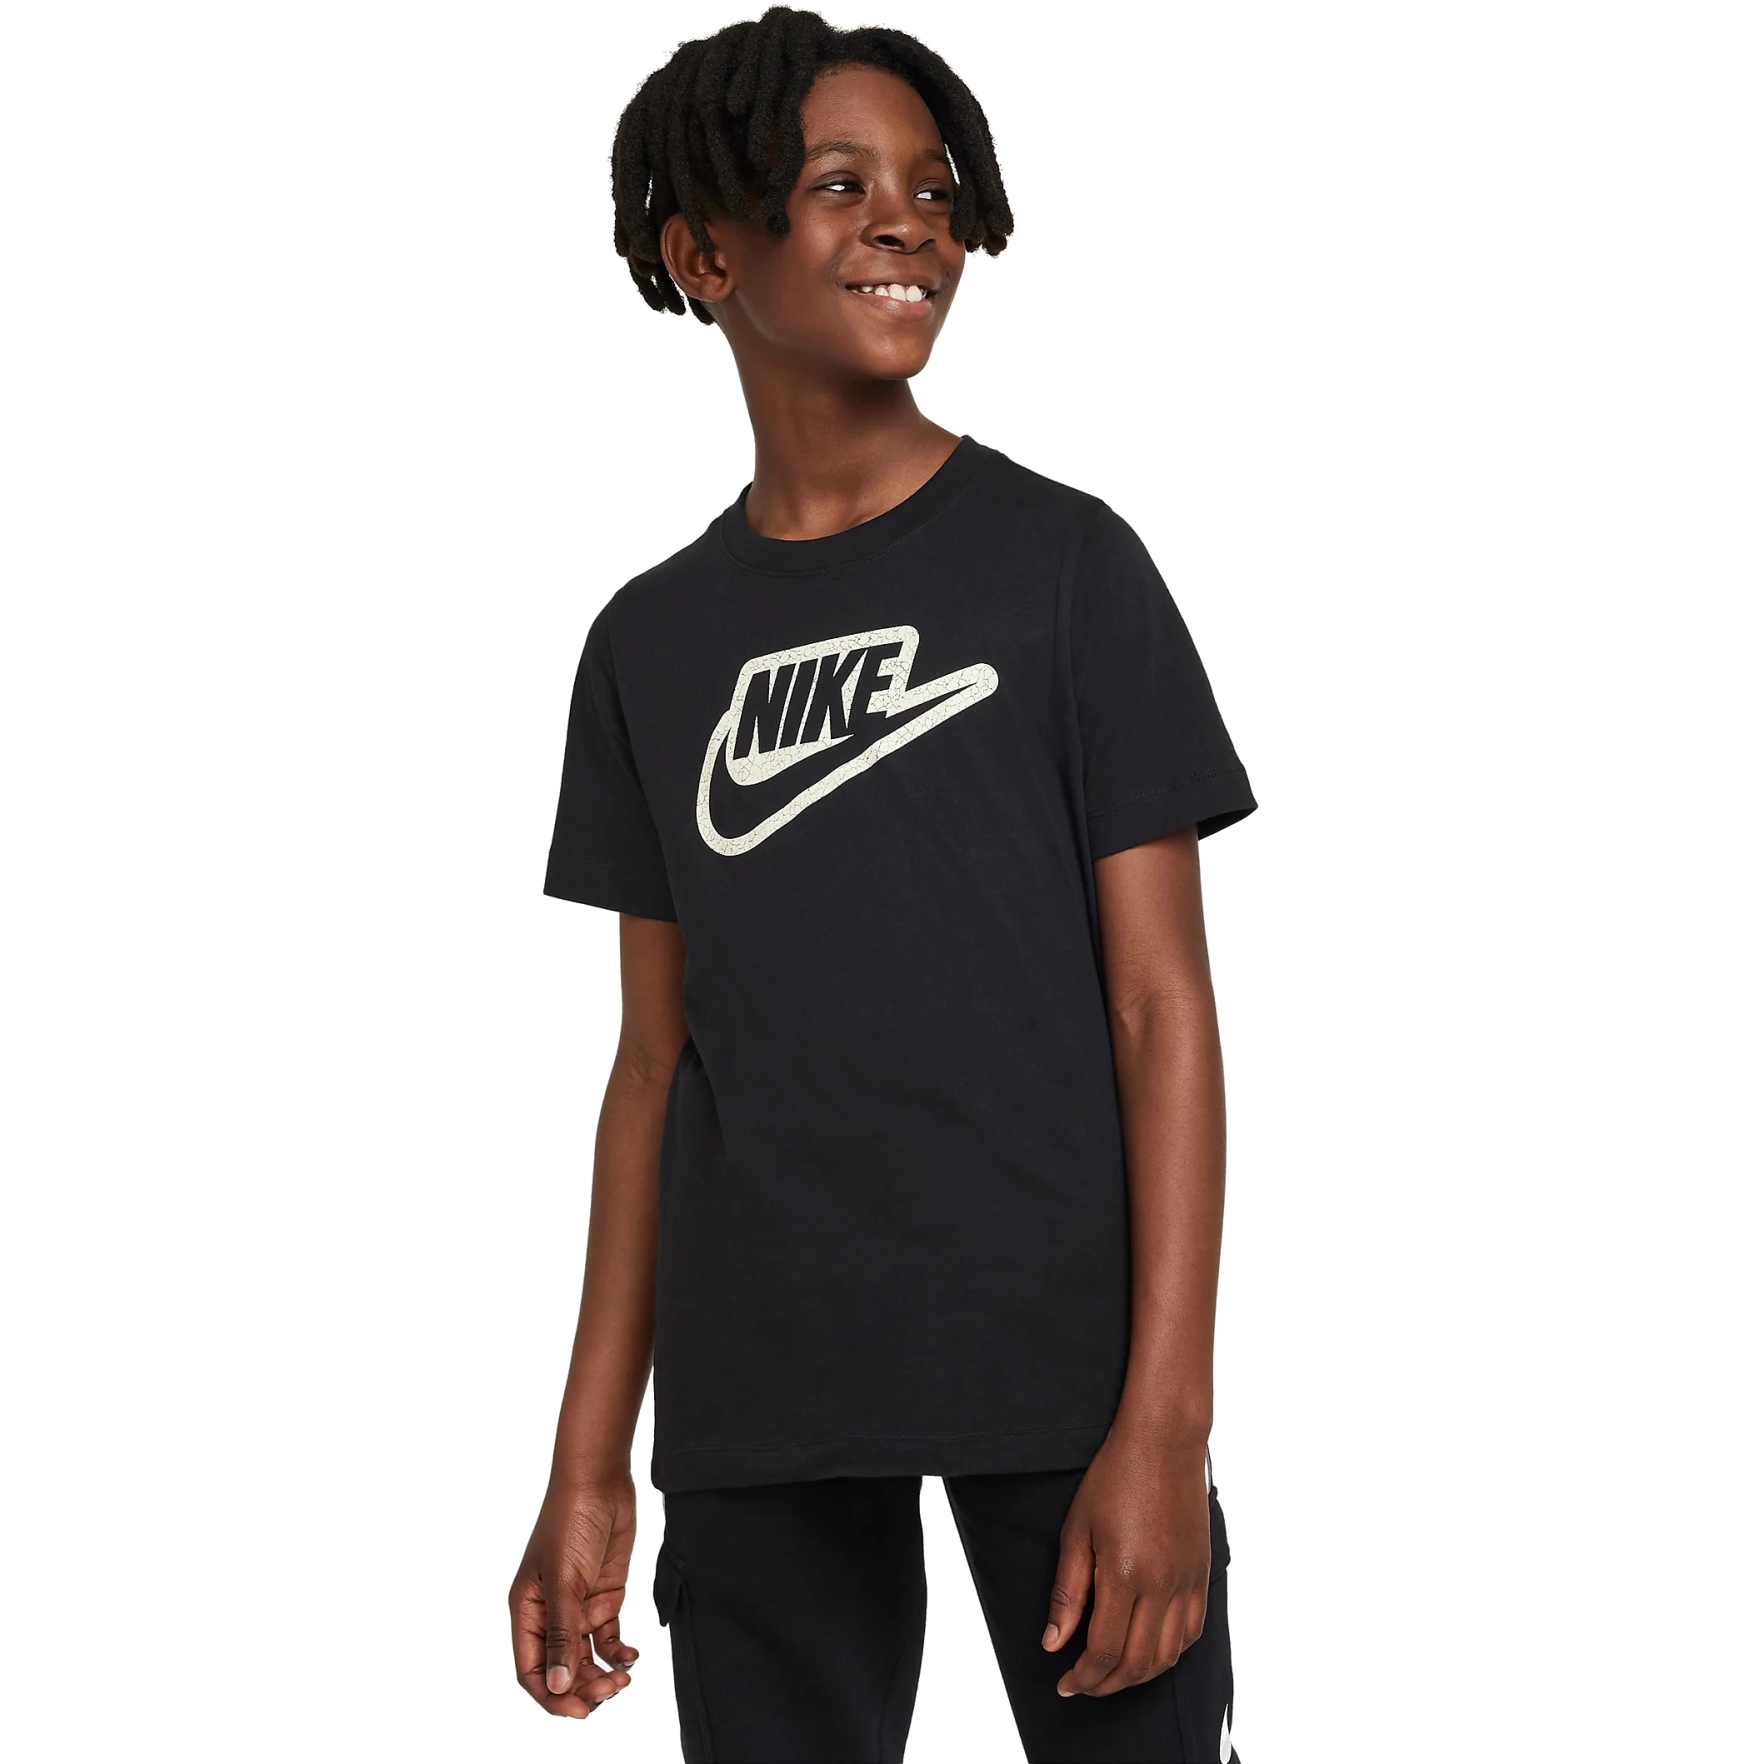 Produktbild von Nike Sportswear T-Shirt für ältere Kinder - schwarz FD3189-010